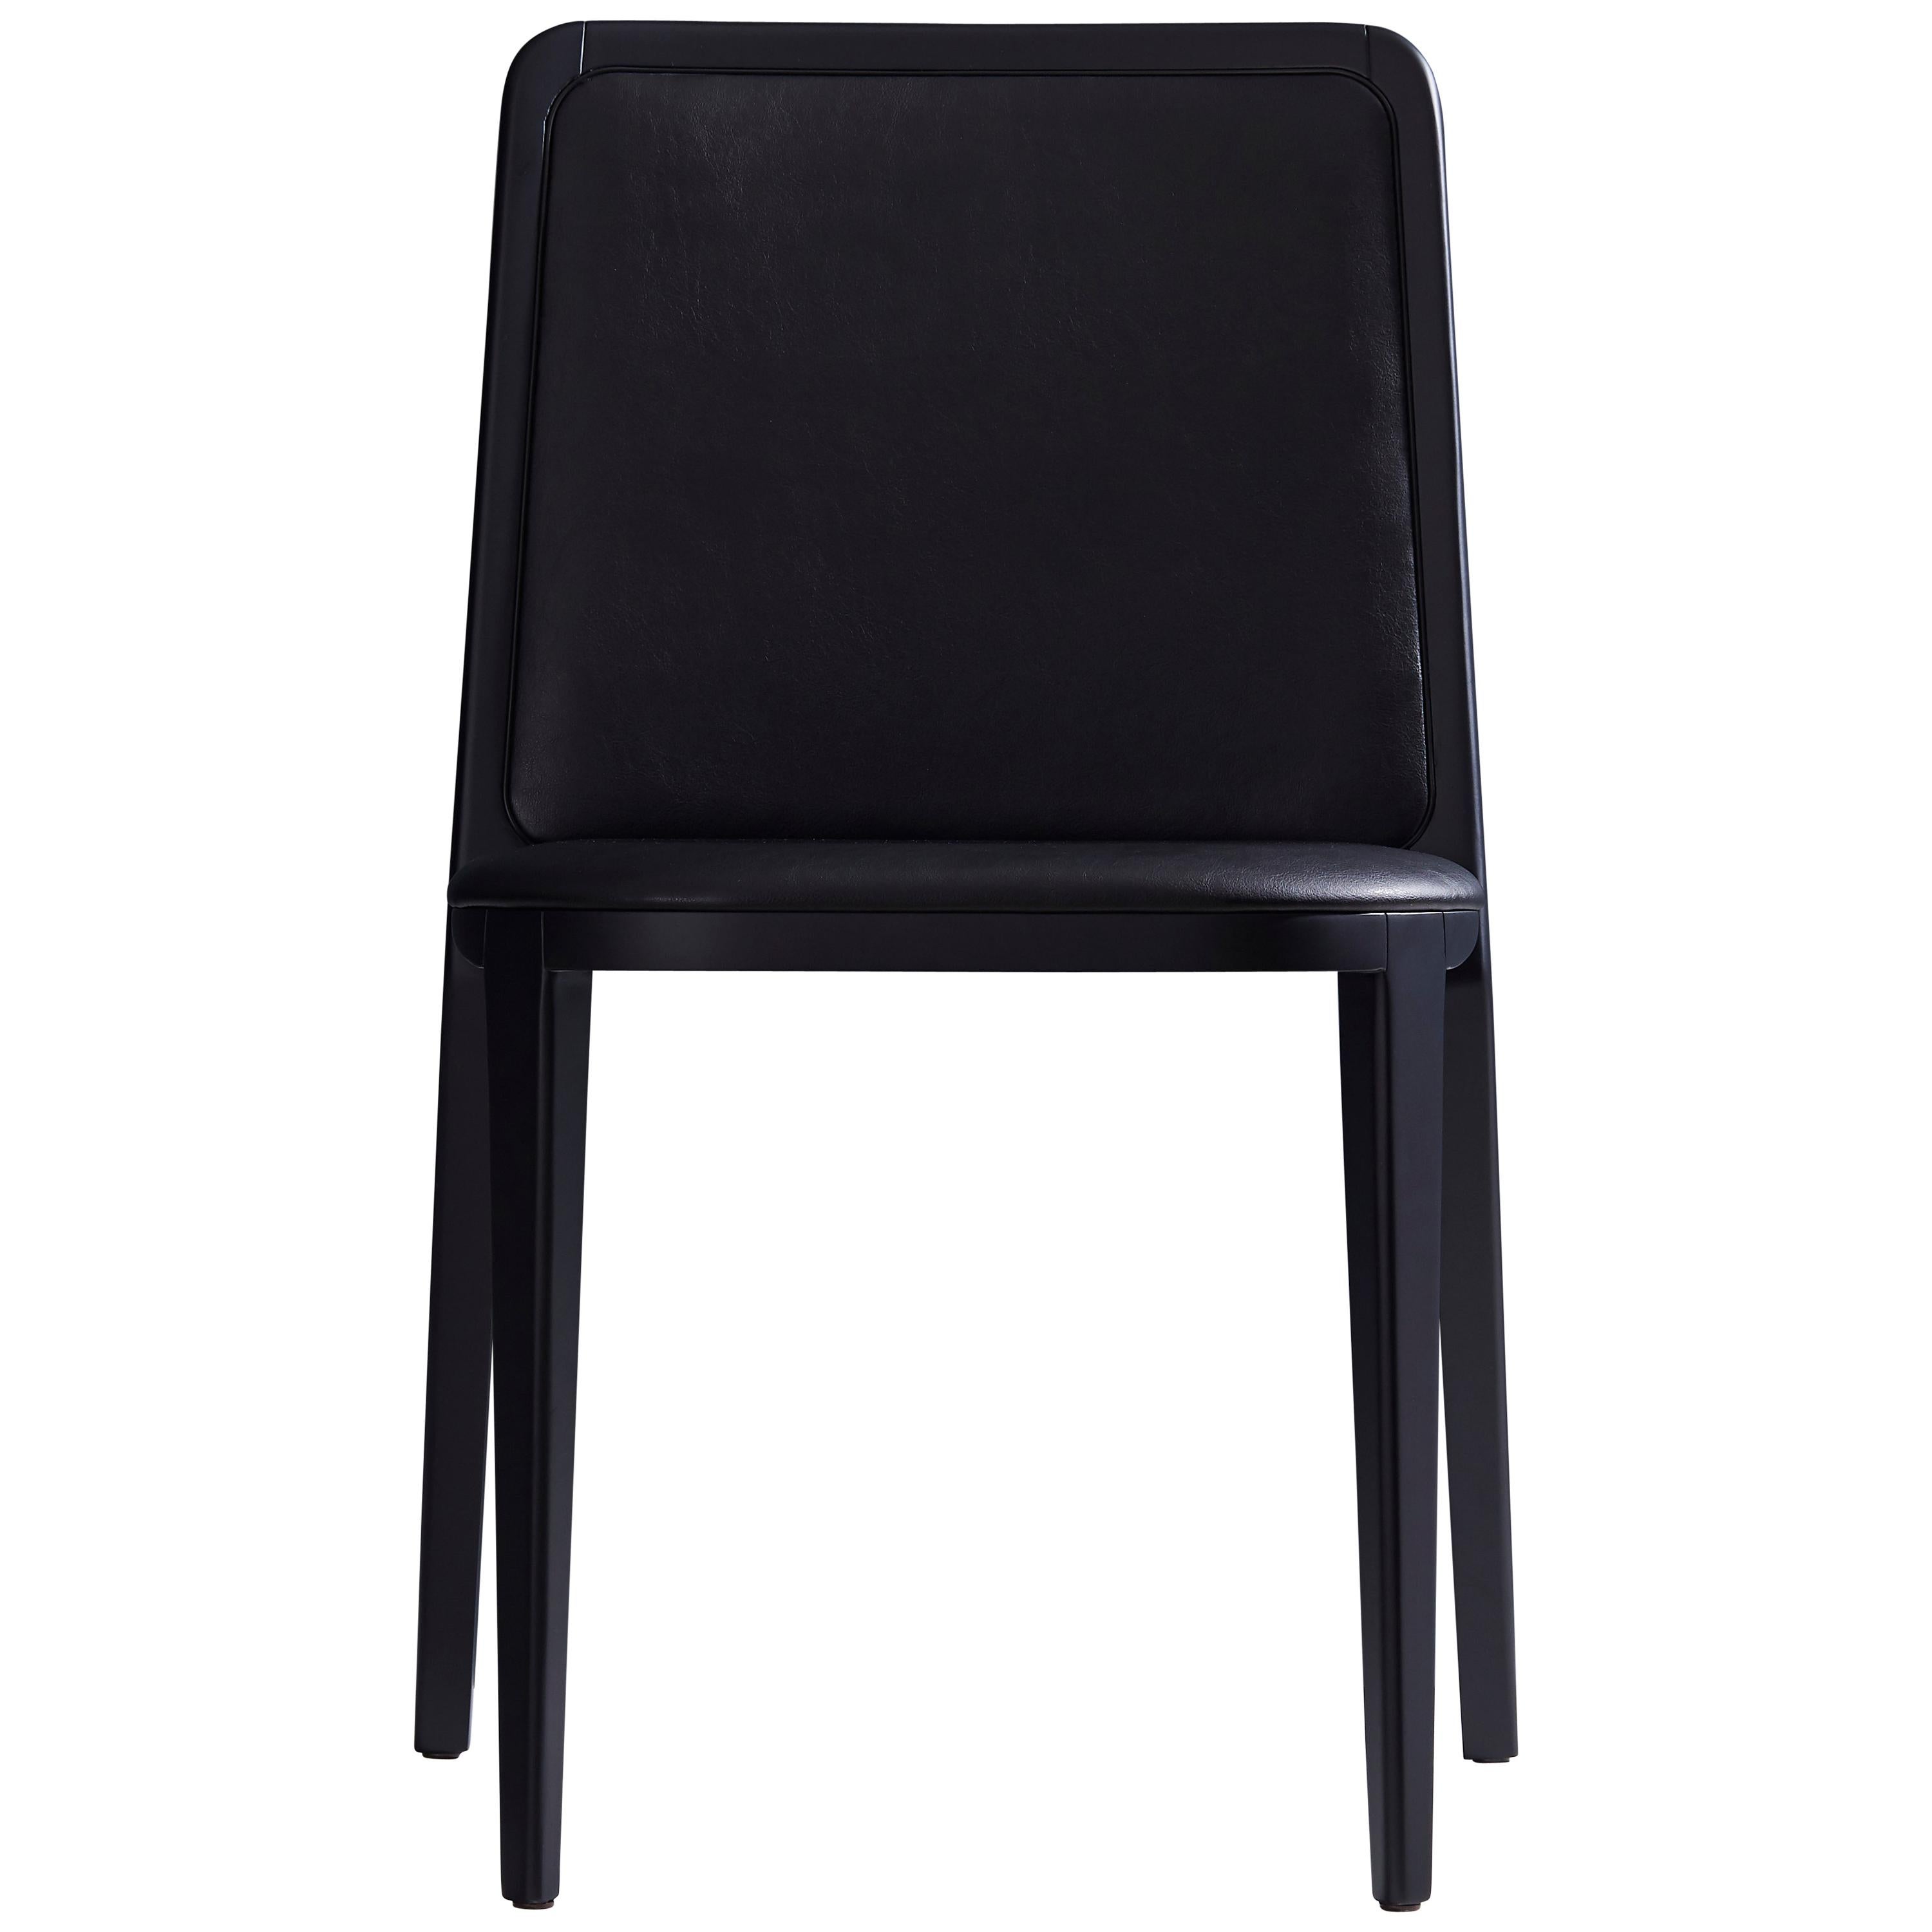 Chaise en bois massif de style minimaliste, siège en cuir, panneau arrière tapissé en vente